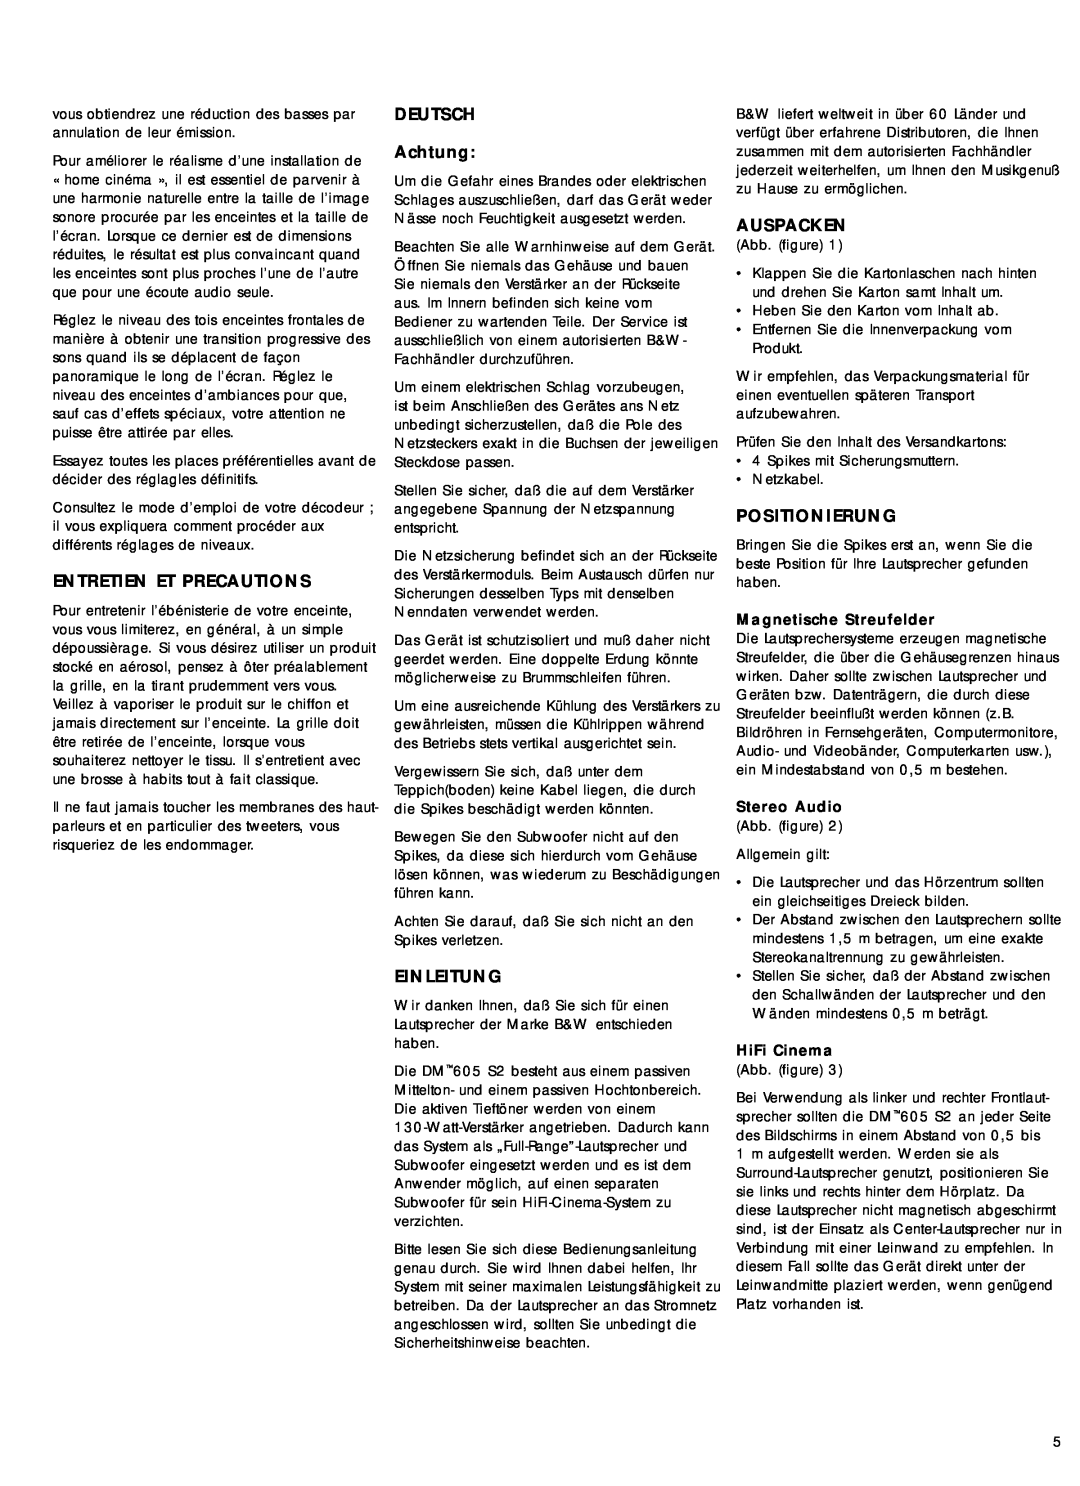 Bowers & Wilkins 600 Series2 owner manual Entretien Et Precautions, DEUTSCH Achtung, Einleitung, Auspacken, Positionierung 